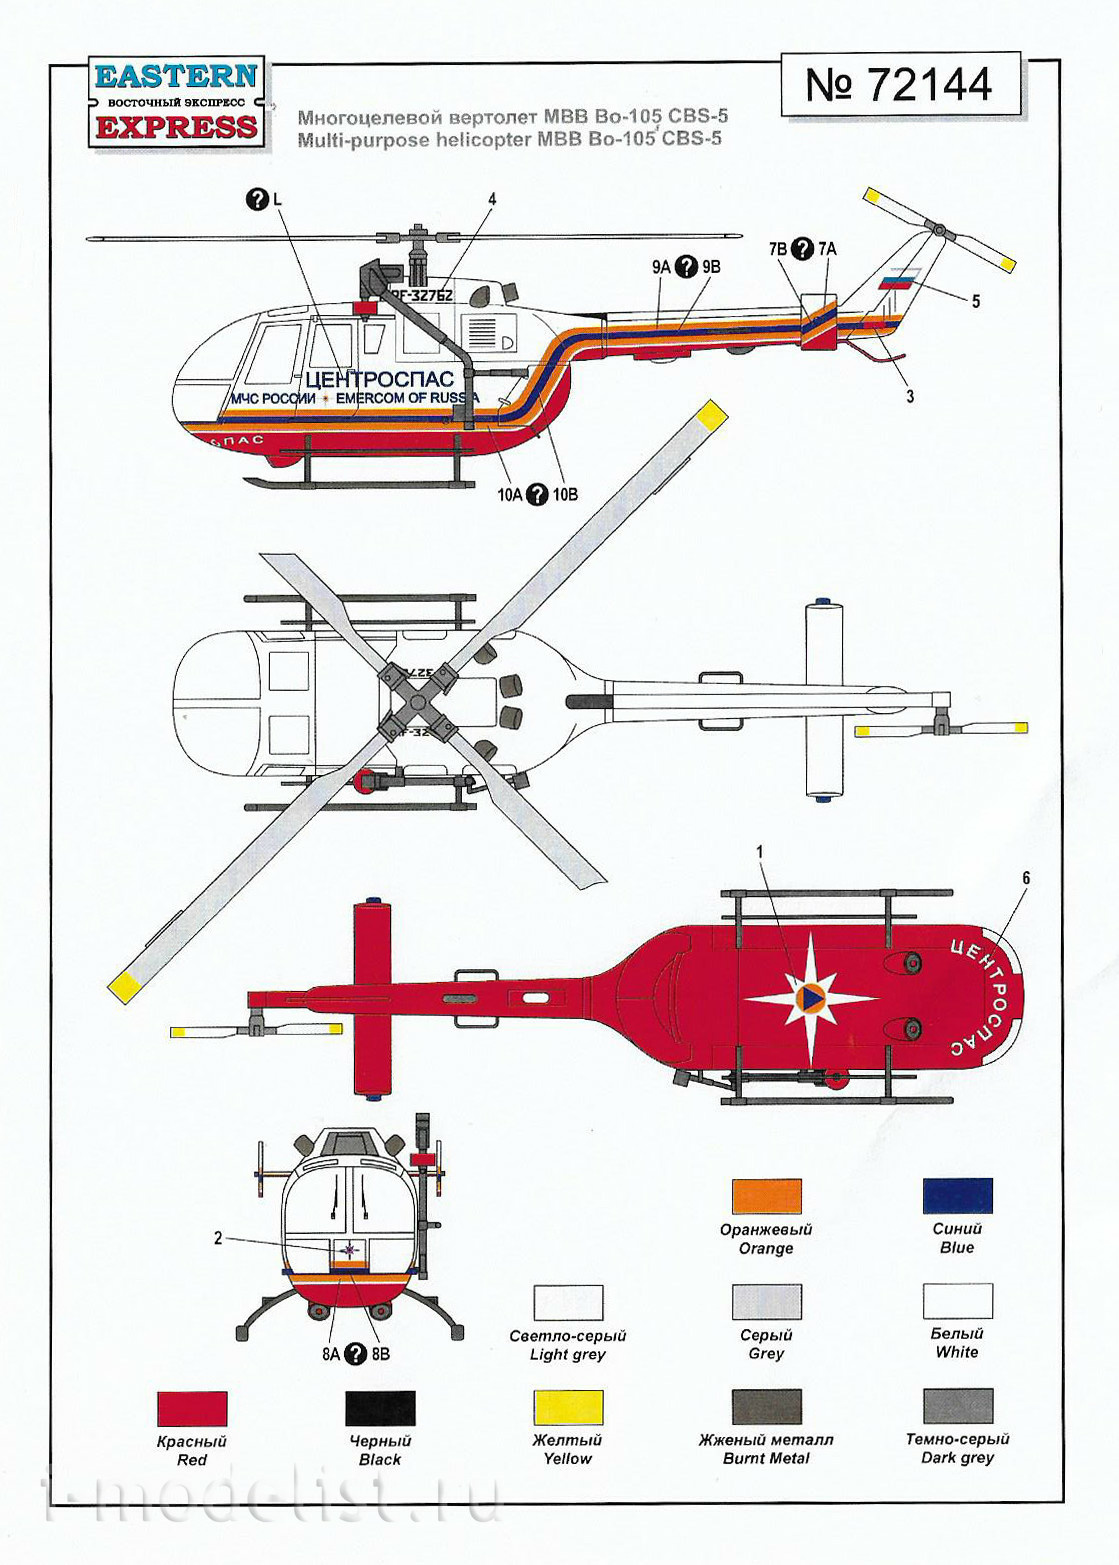 72144 Восточный экспресс 1/72 Многоцелевой вертолёт Bo-105 CBS-5 МЧС